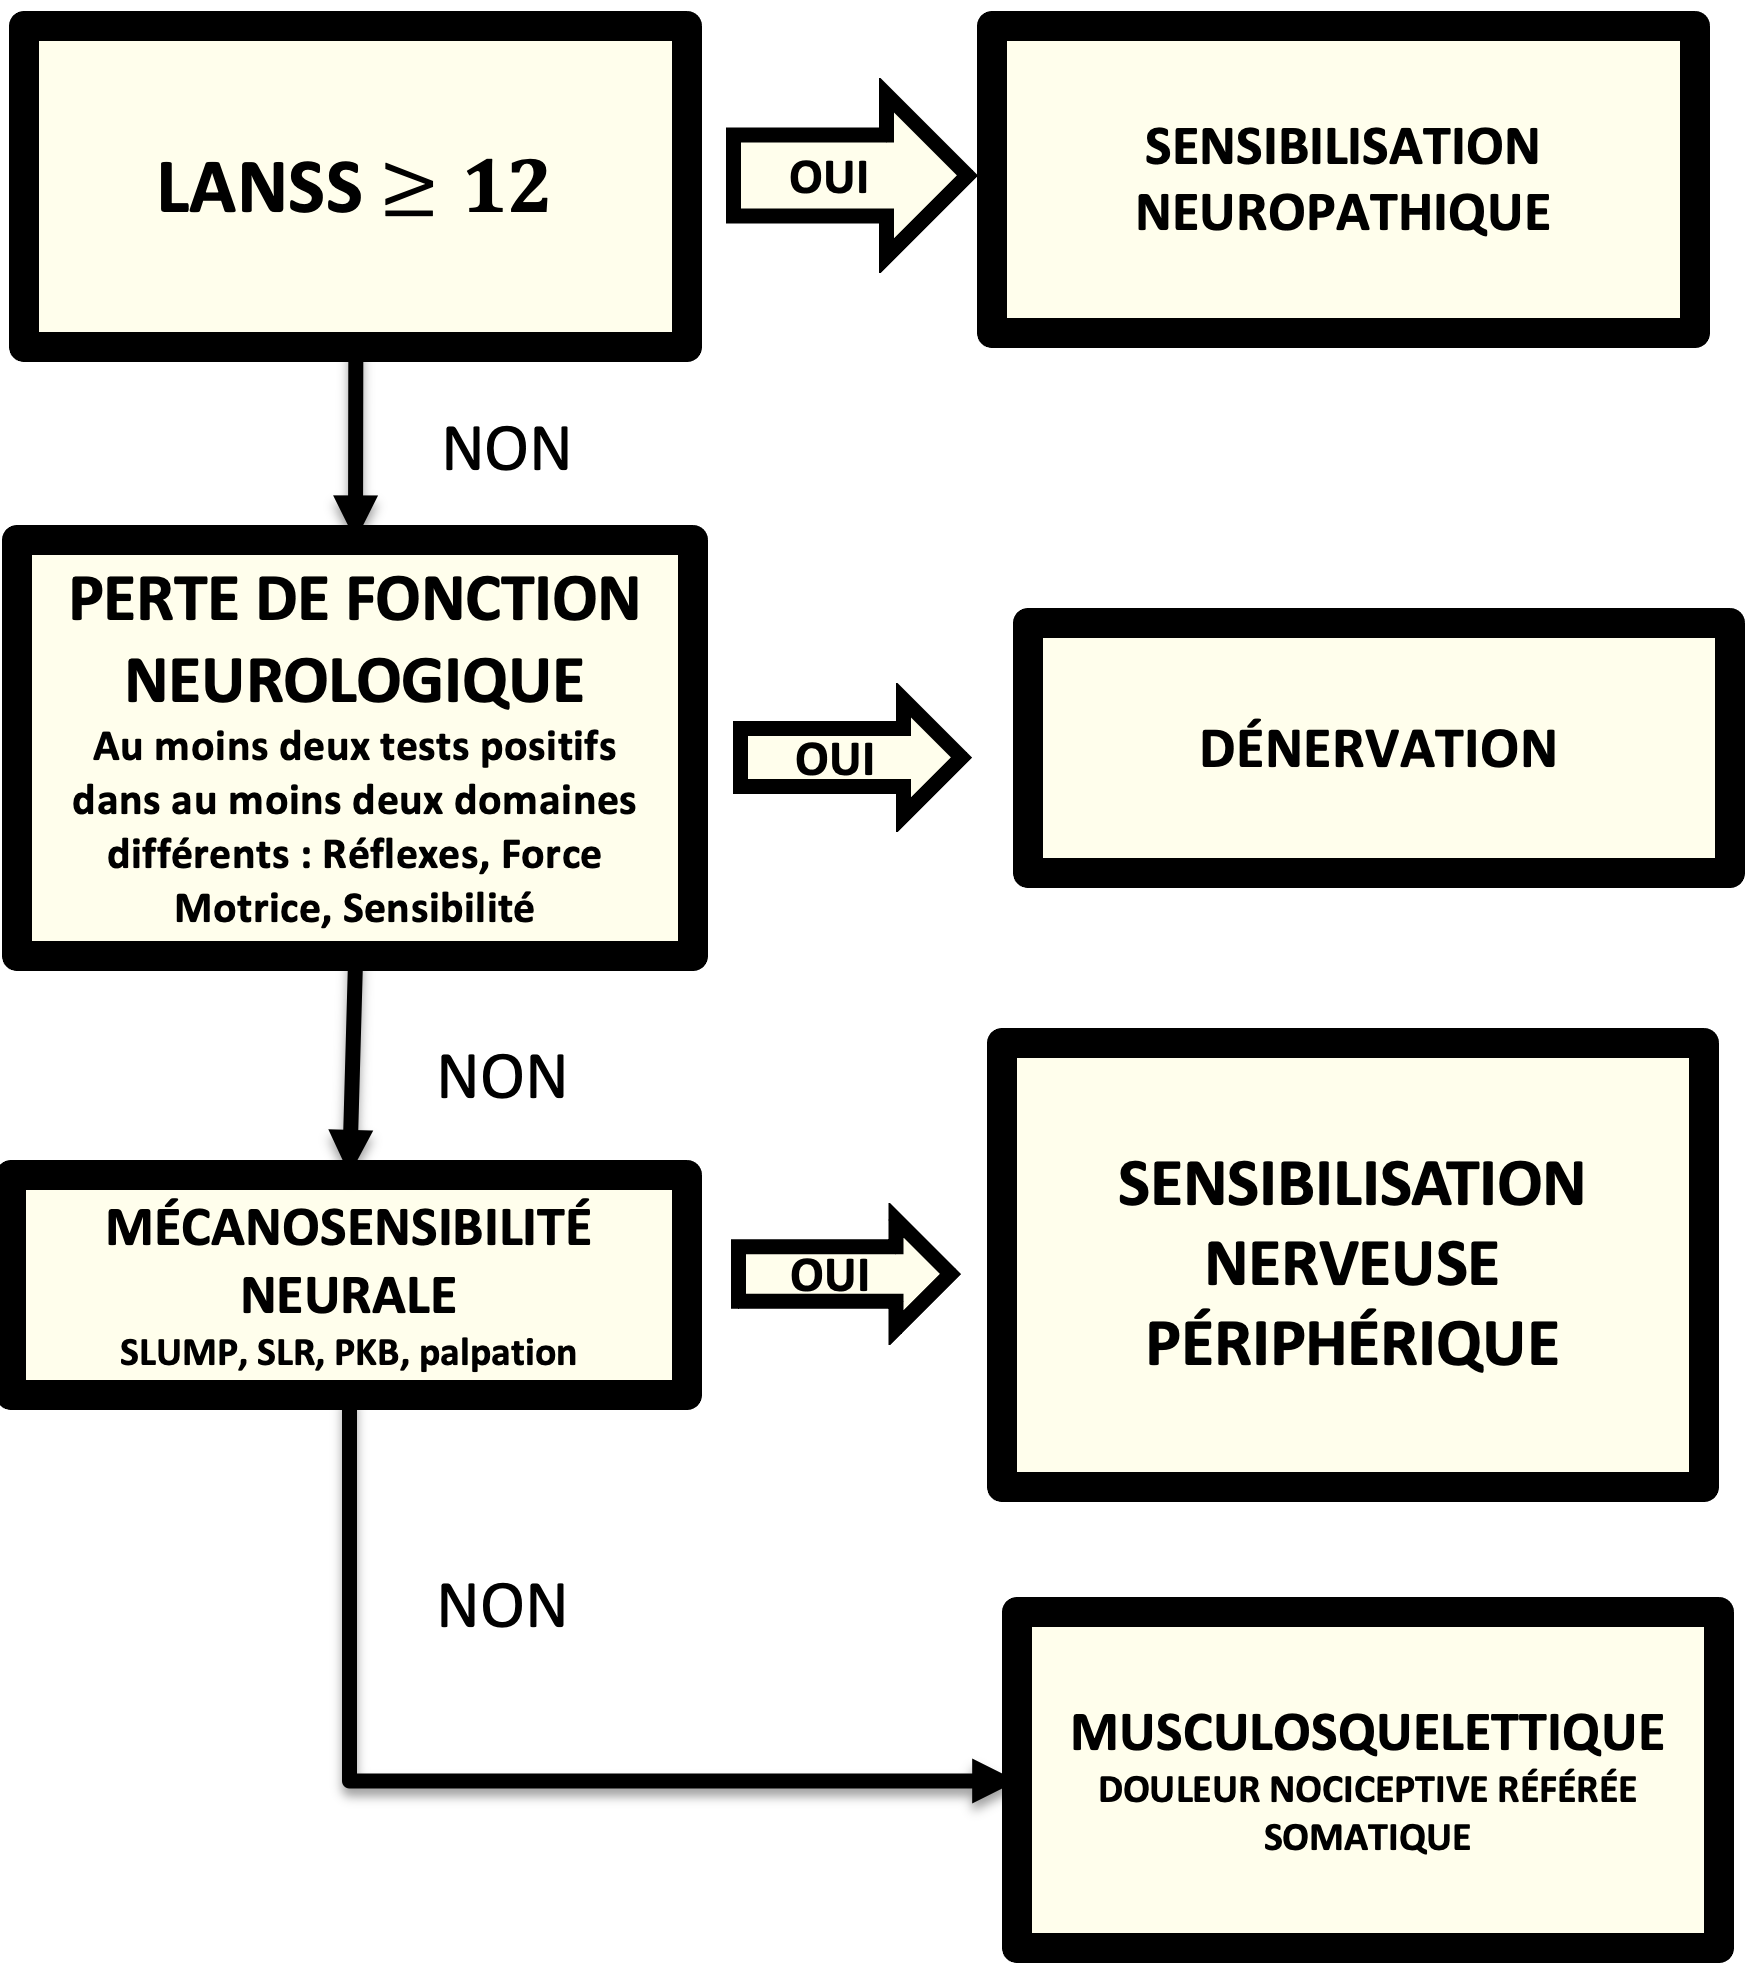 Figure 2: Algorithme de Schafer de discrimination des douleurs neuropathiques